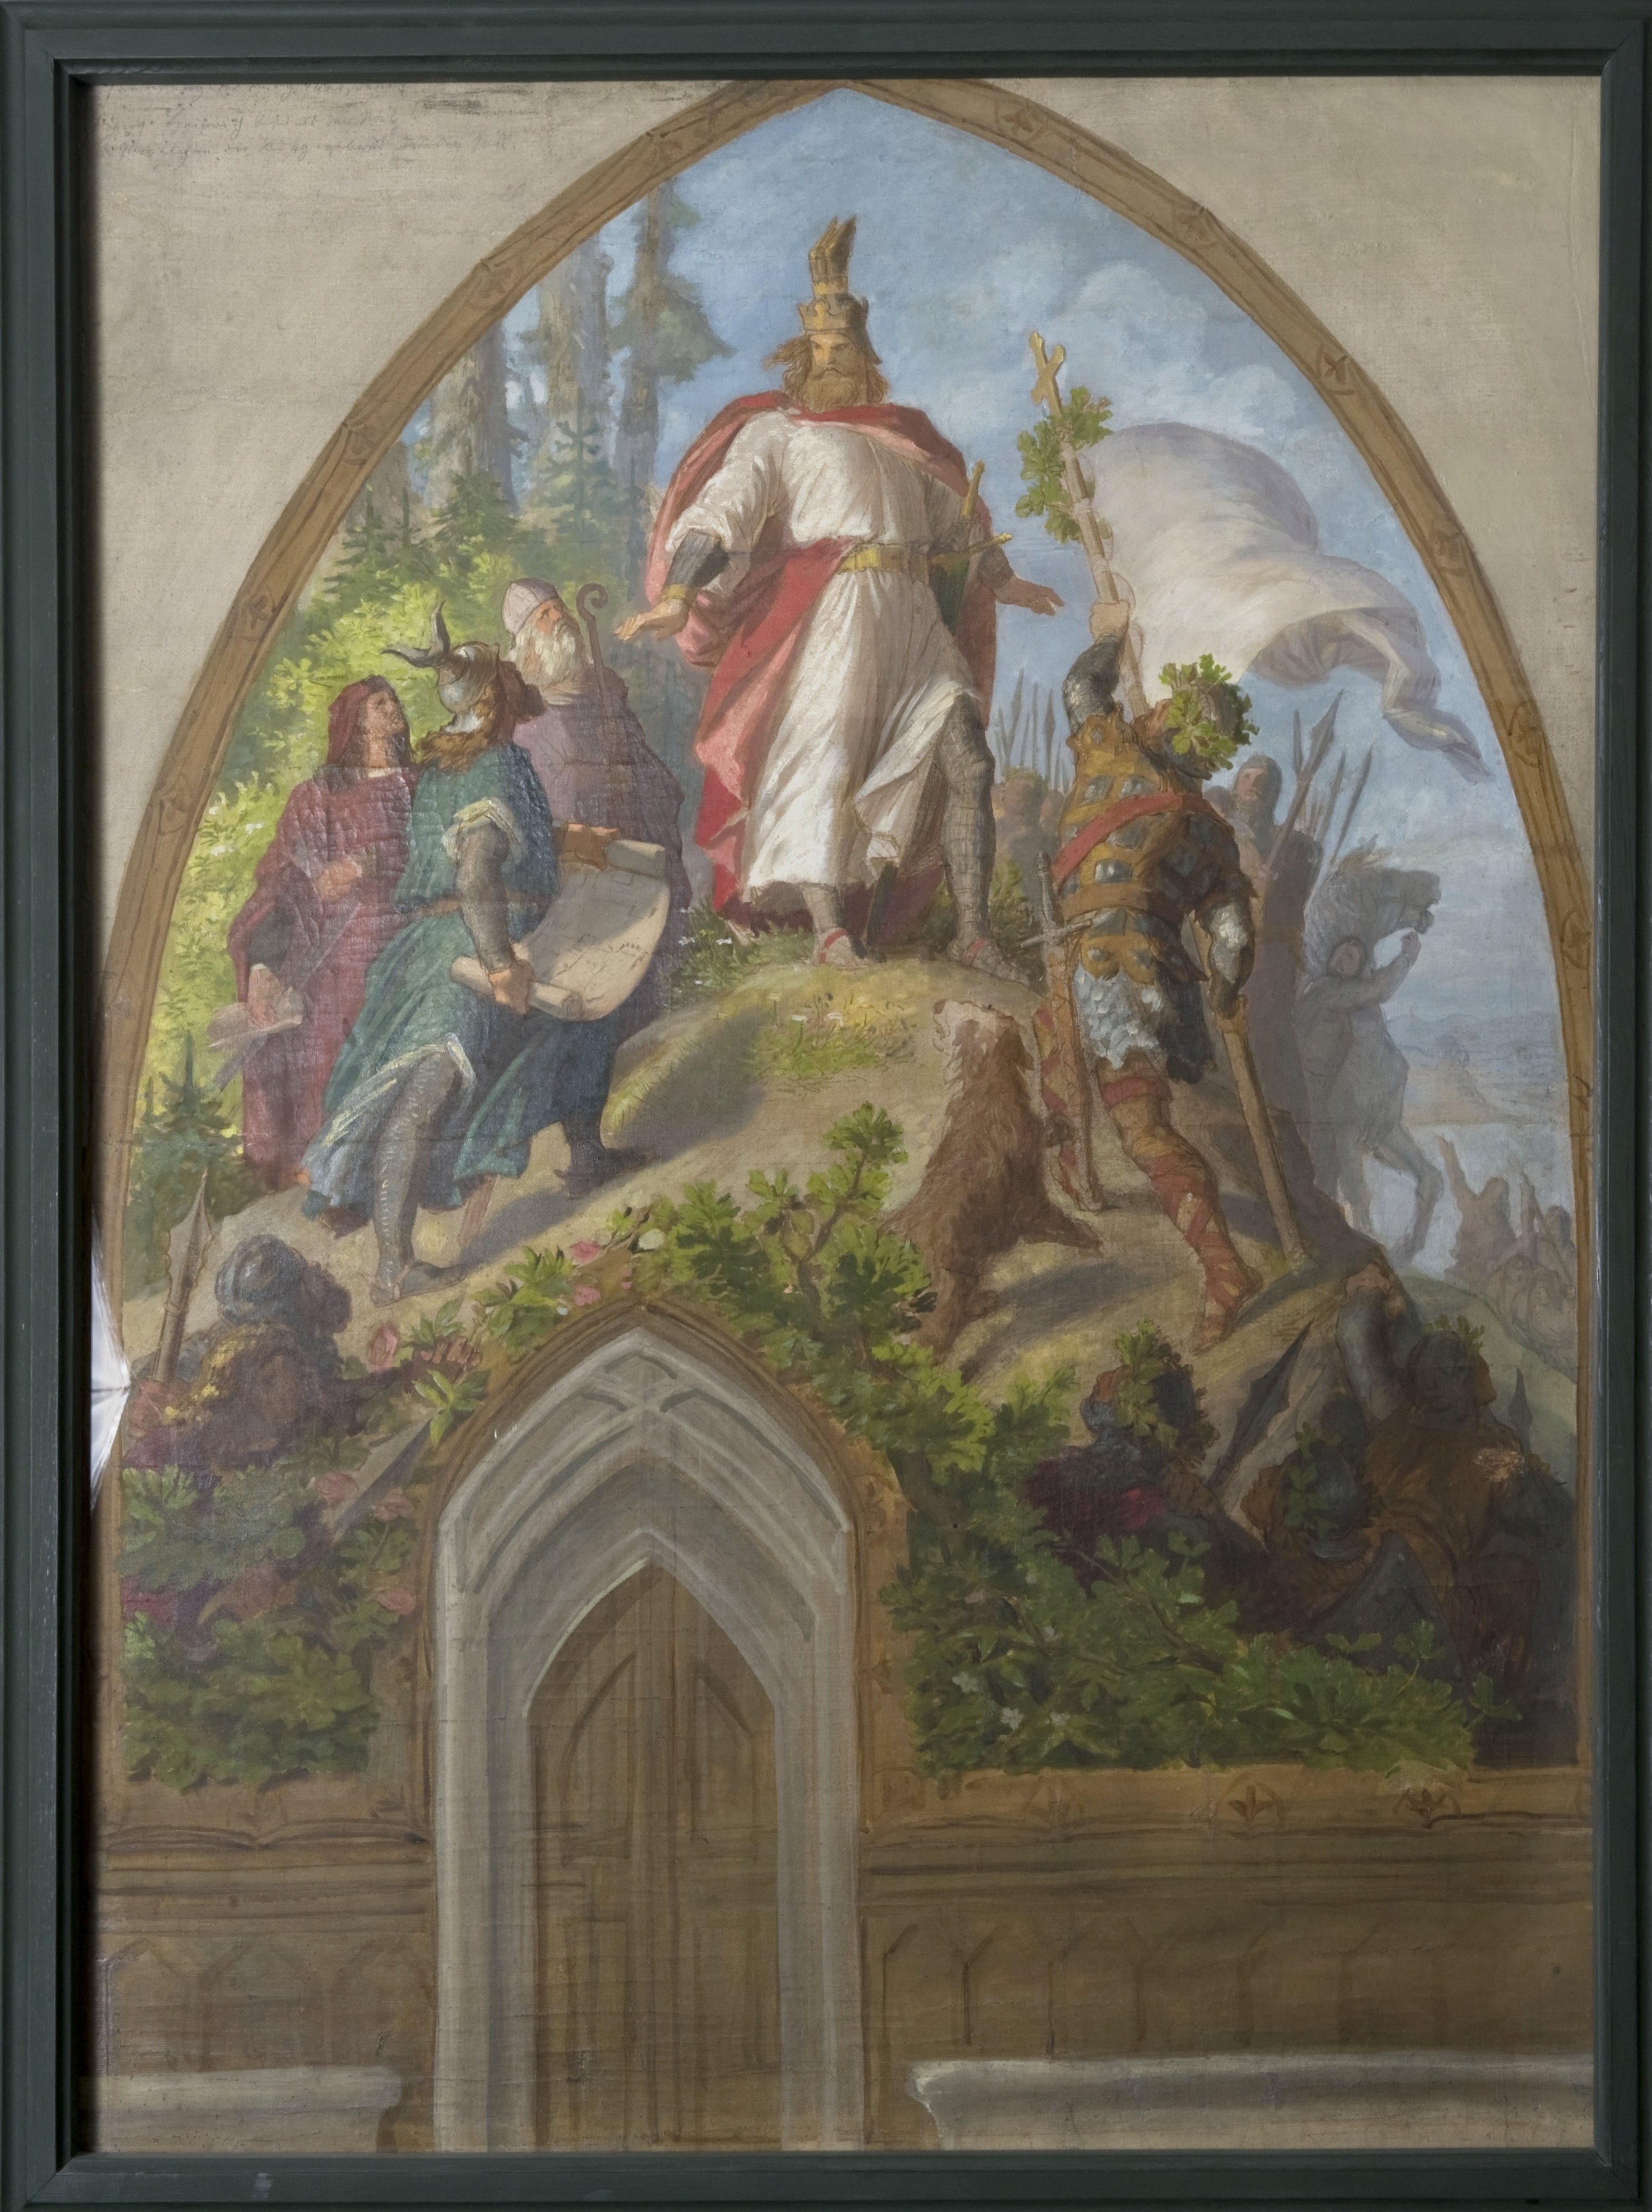 Gemälde: Entwurf zum Wandbild "Die Gründung der Burg Meißen durch König Heinrich I. im Jahr 929" (SBG gGmbH CC BY-NC-SA)